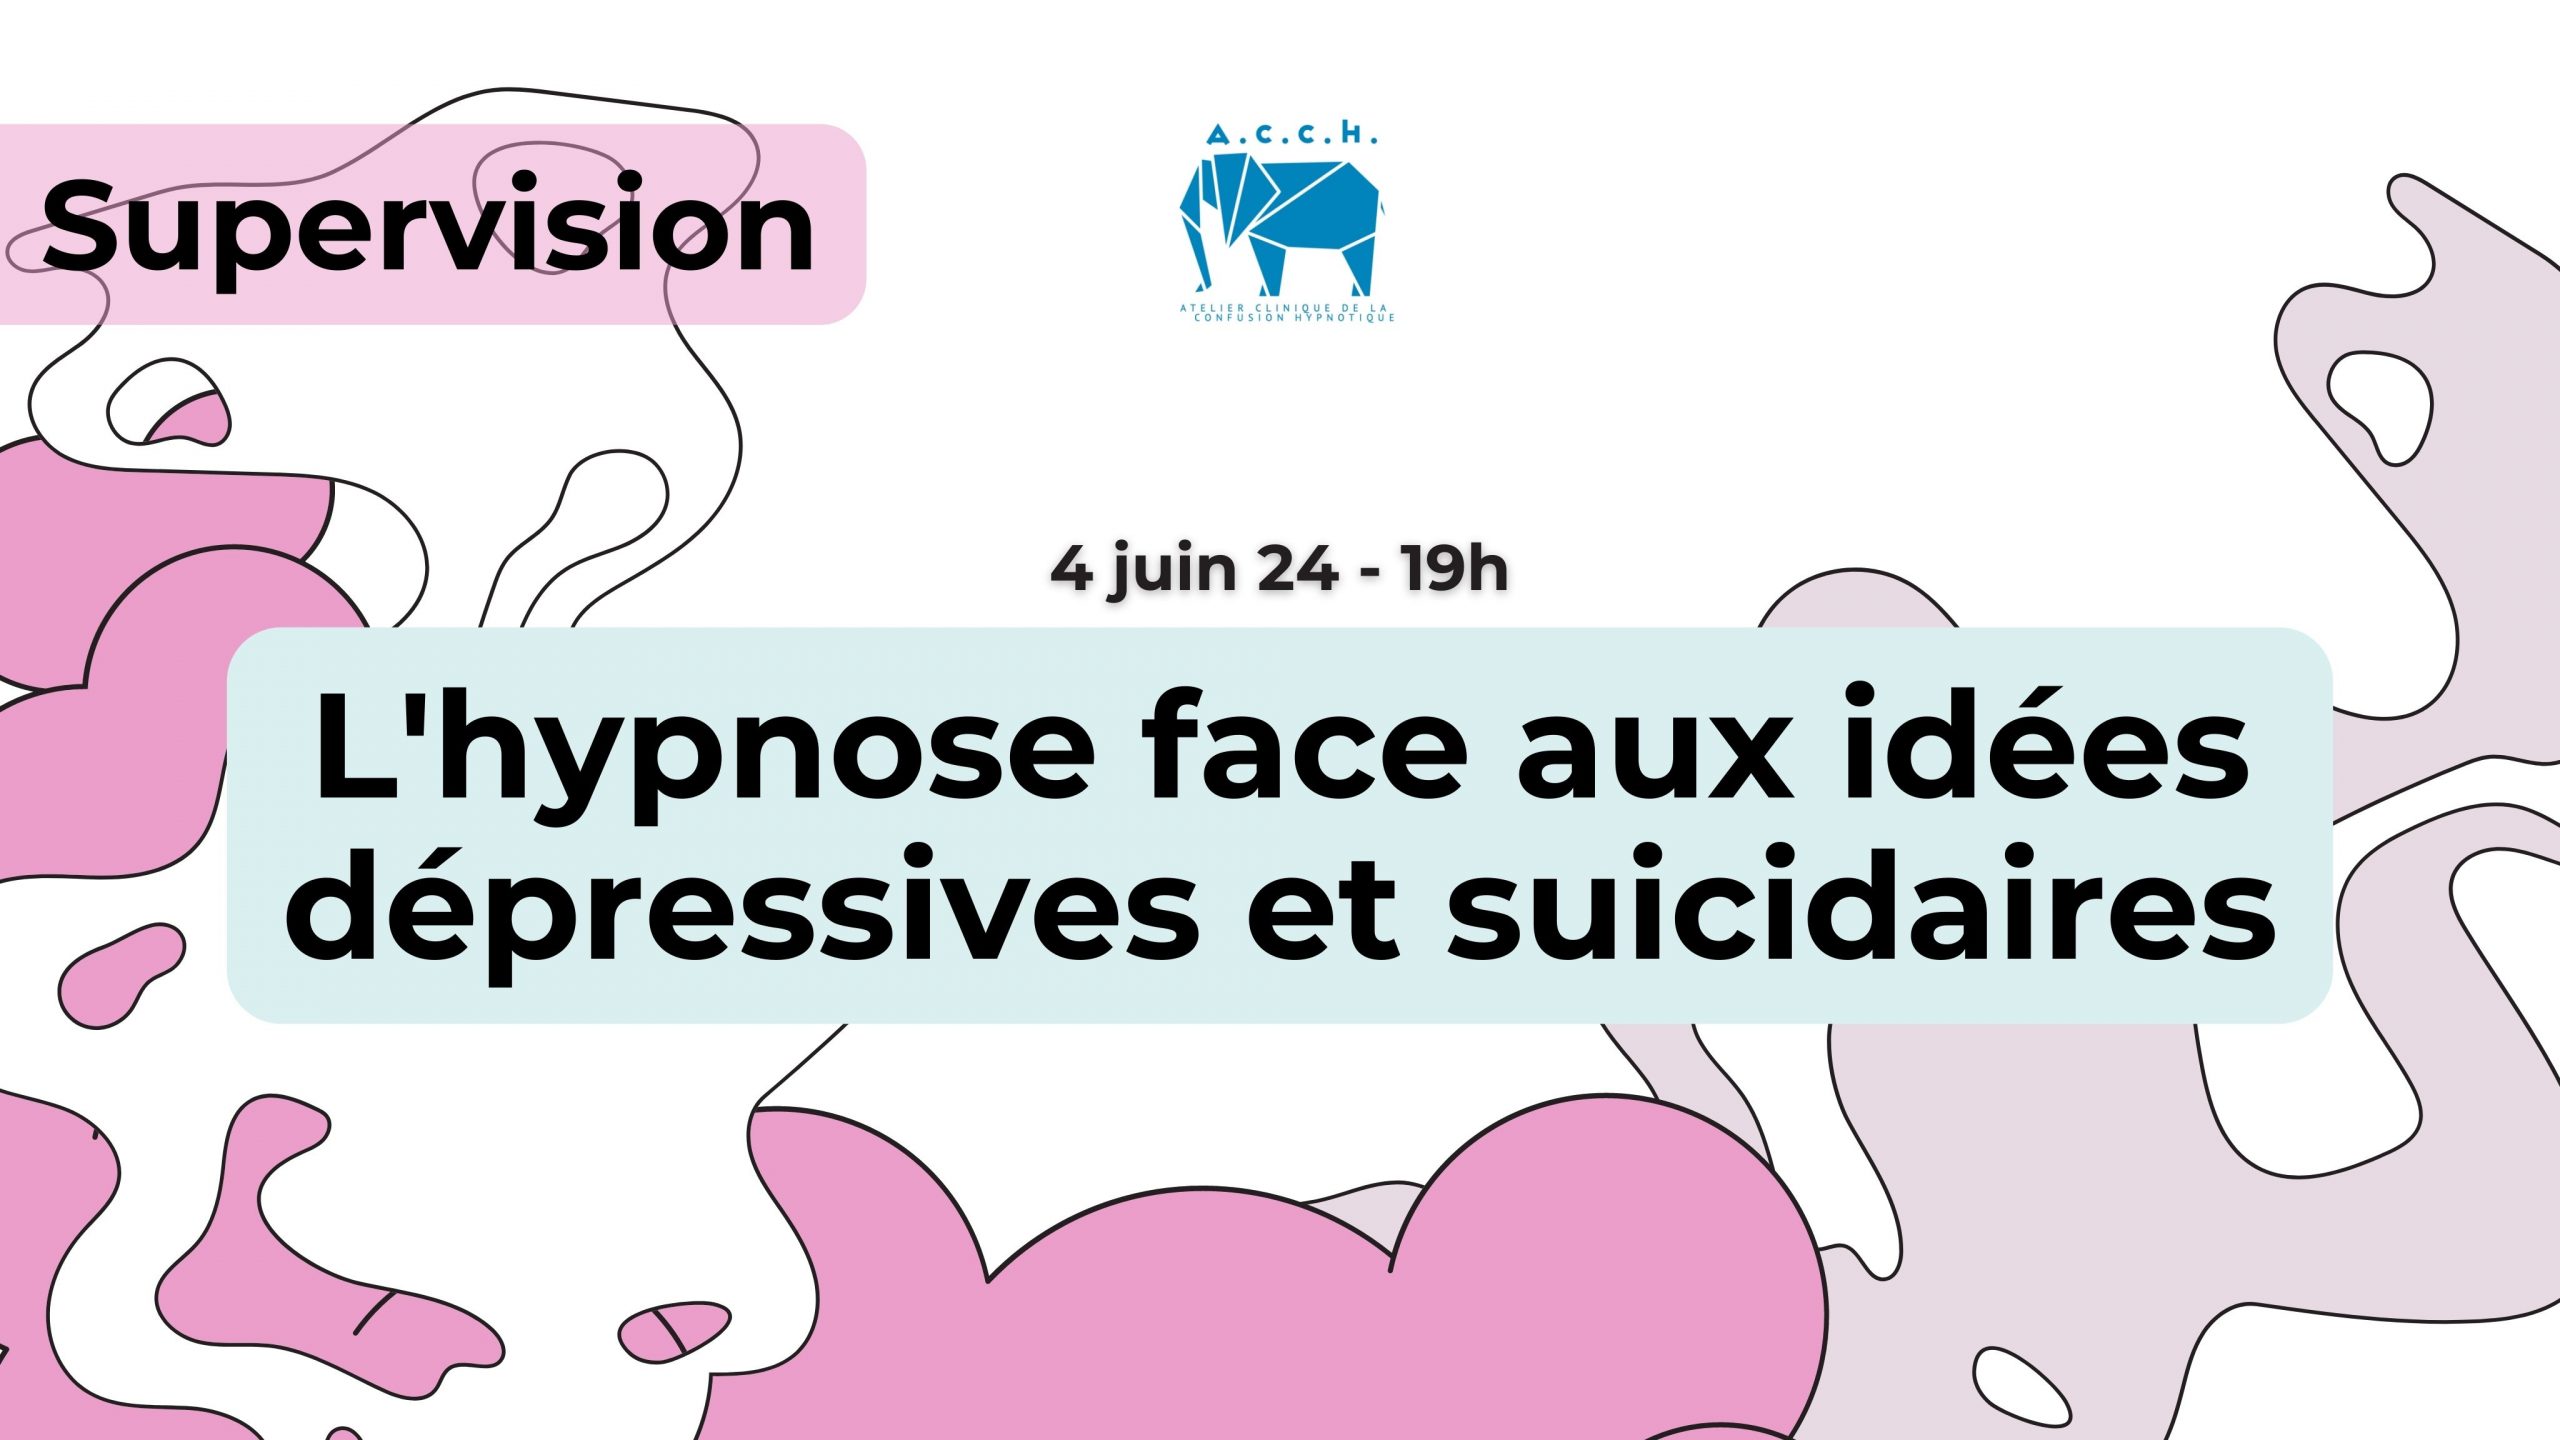 Supervision : L’hypnose face aux idées dépressives et suicidaires